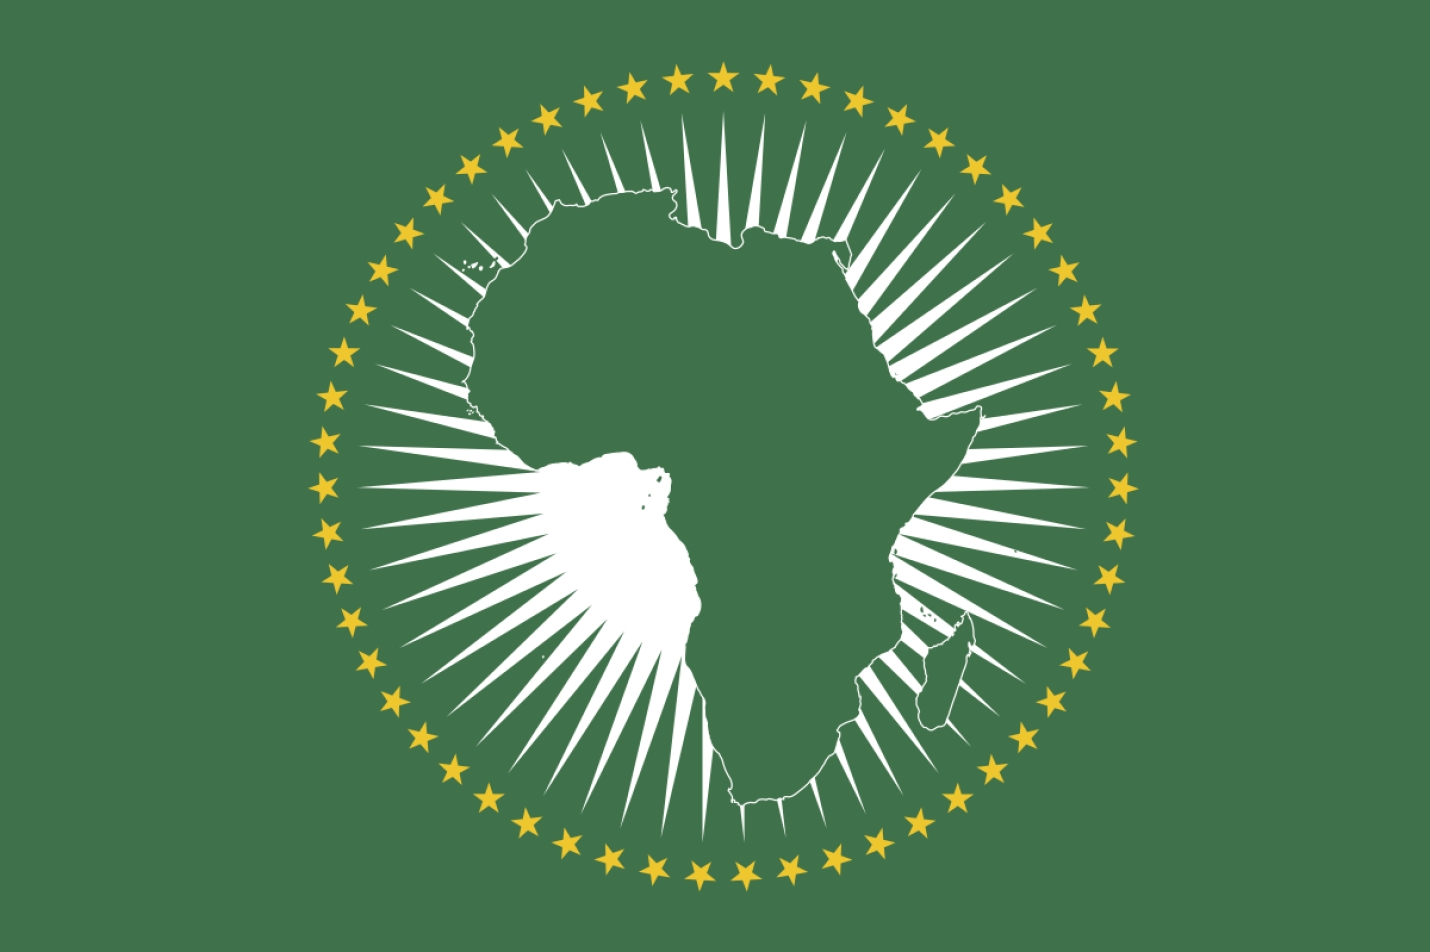 Le Président Evariste Ndayishimiye a pris part à la 35ème Conférence des Chefs d’États membres de l’Union africaine